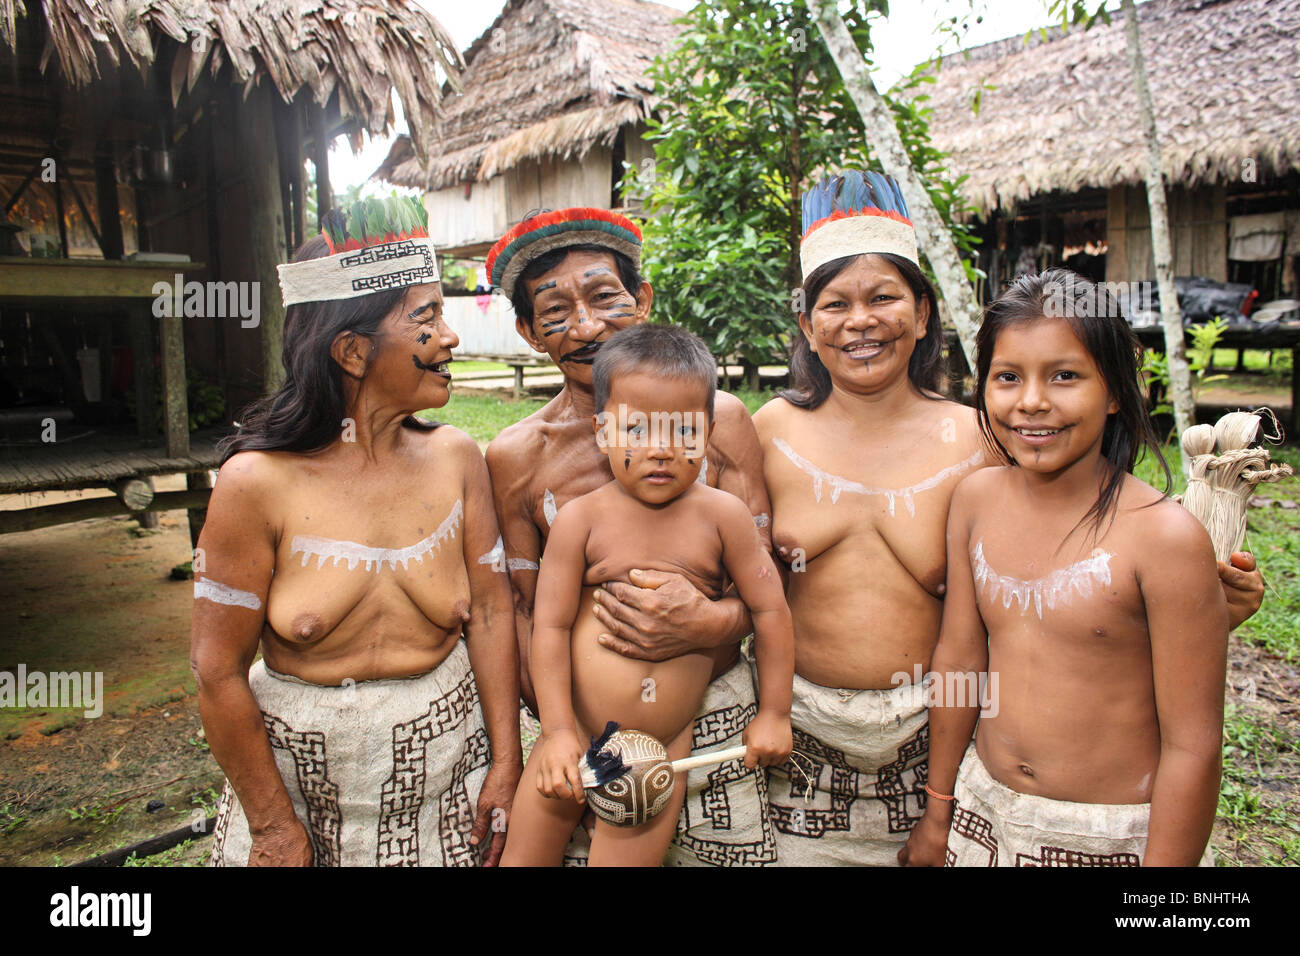 Peru Native Girls Nude Porn Archive